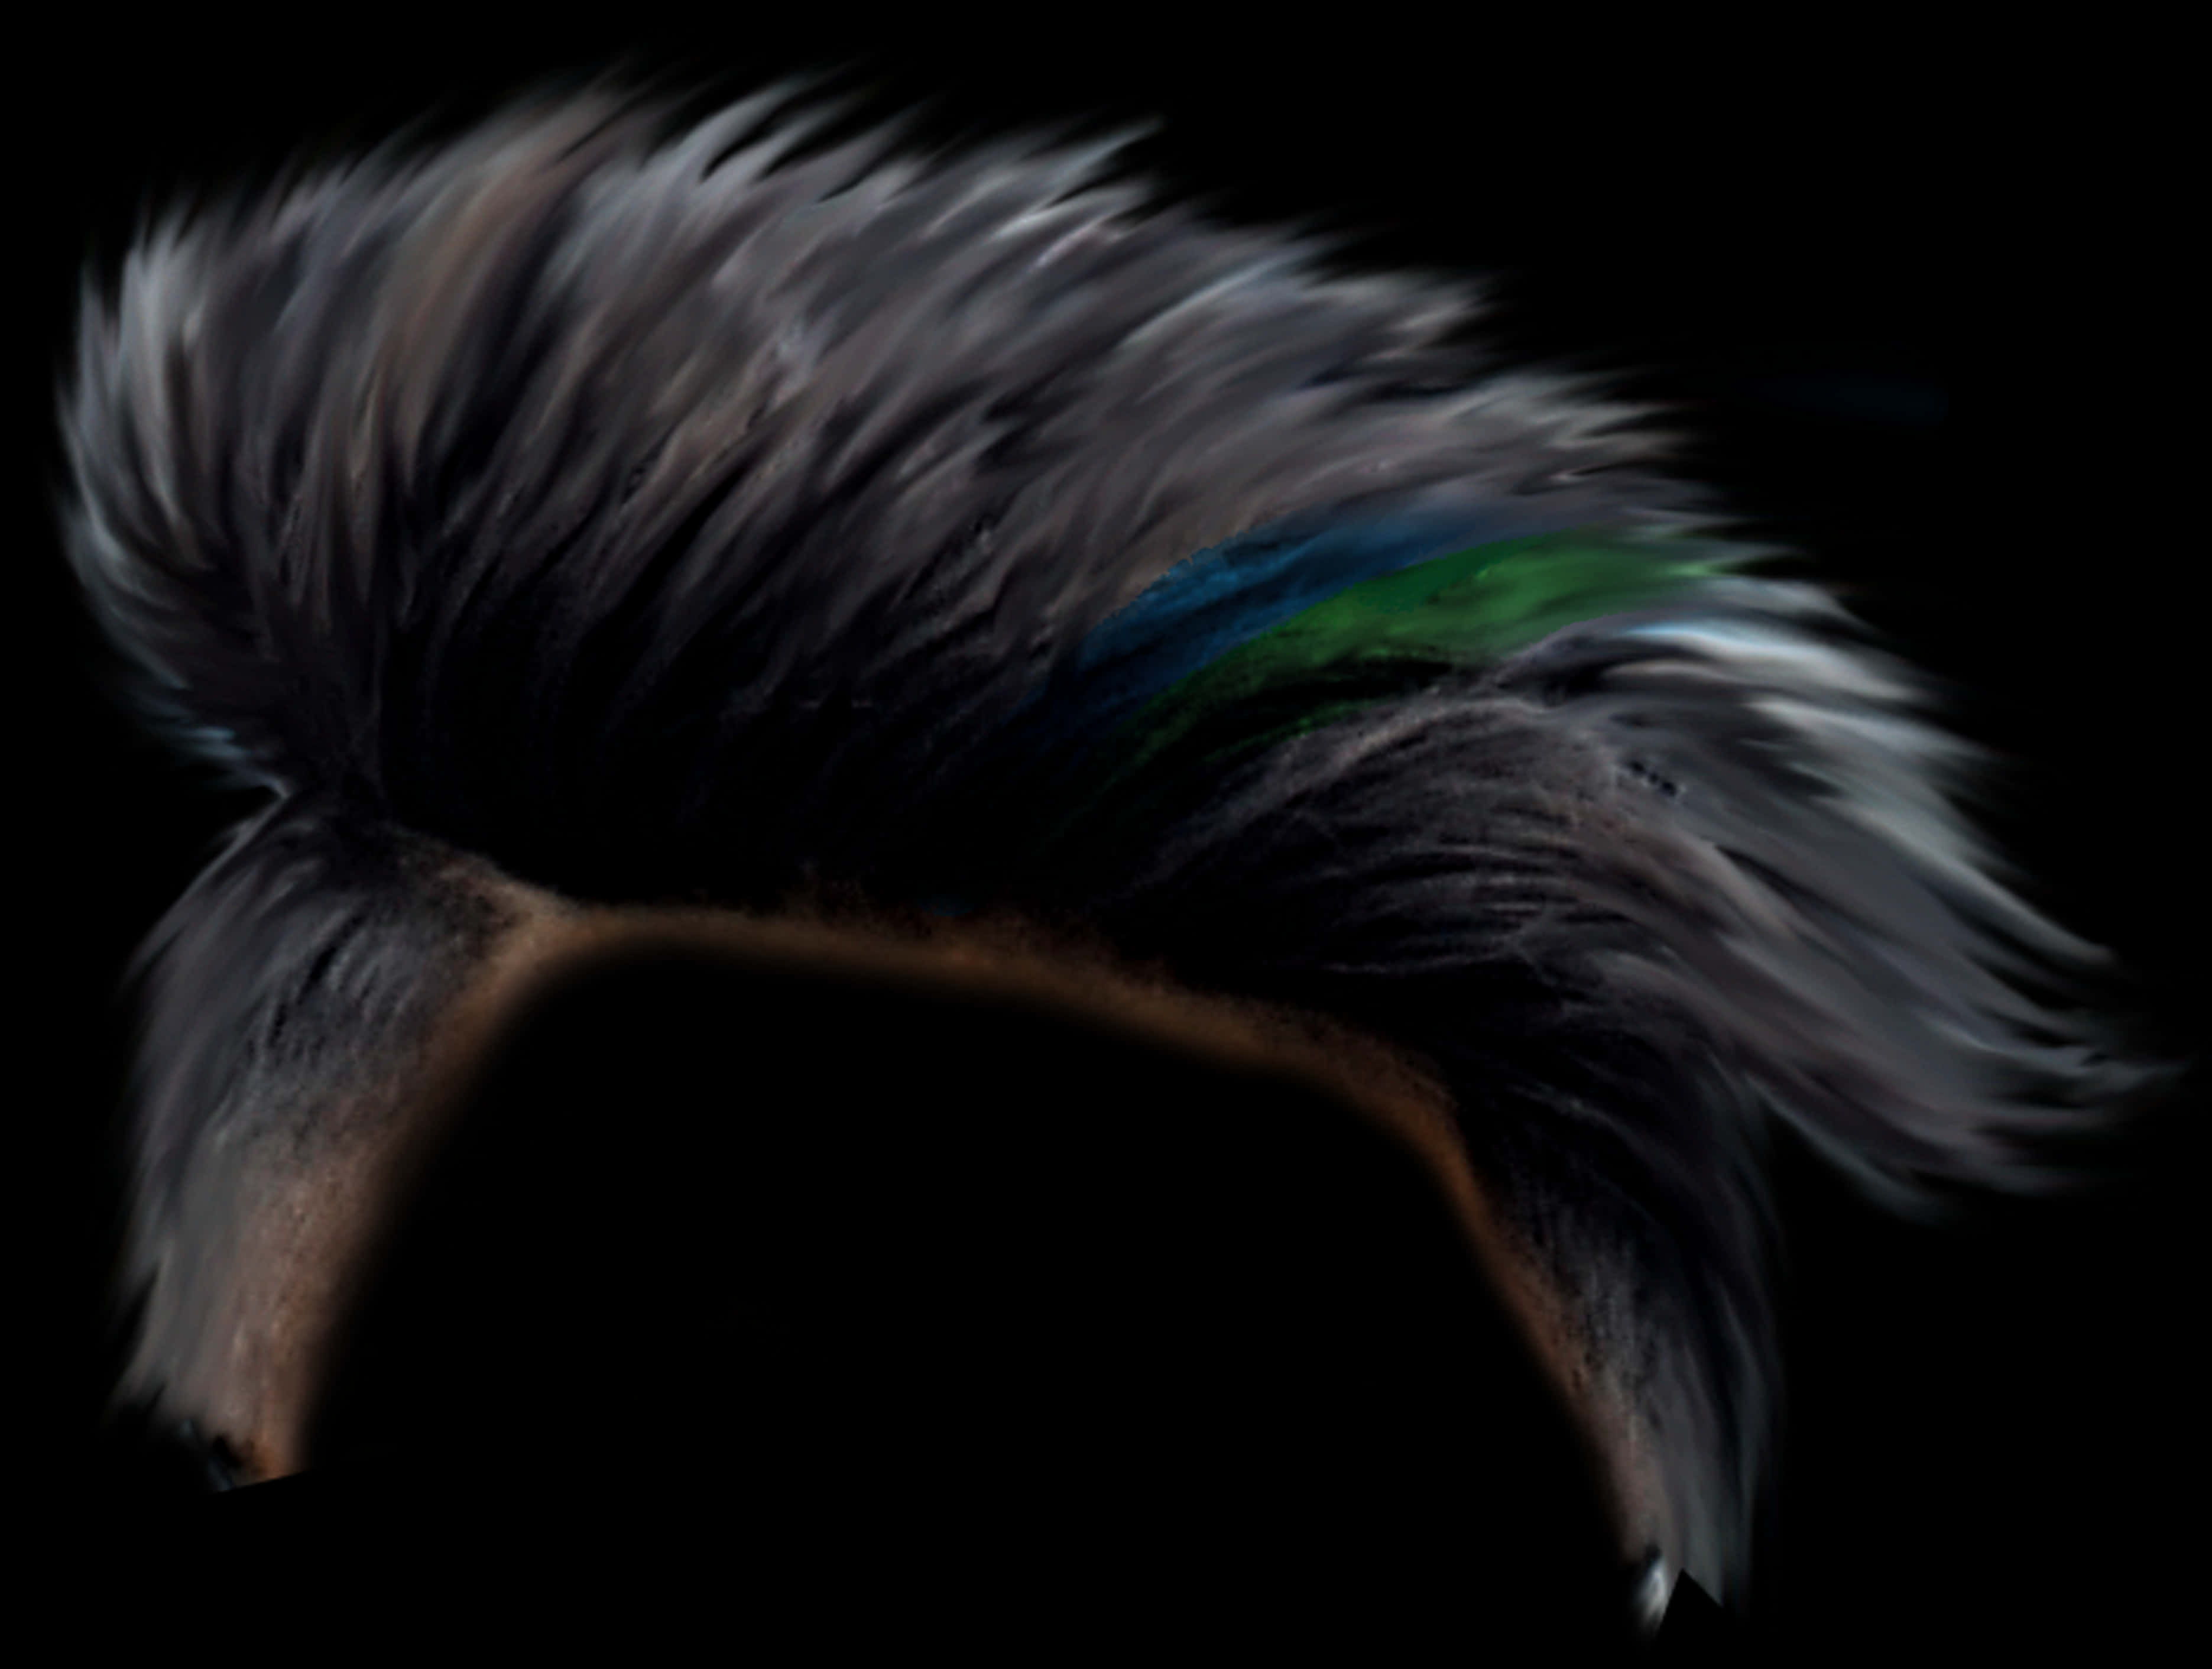 A Close Up Of A Bird's Hair